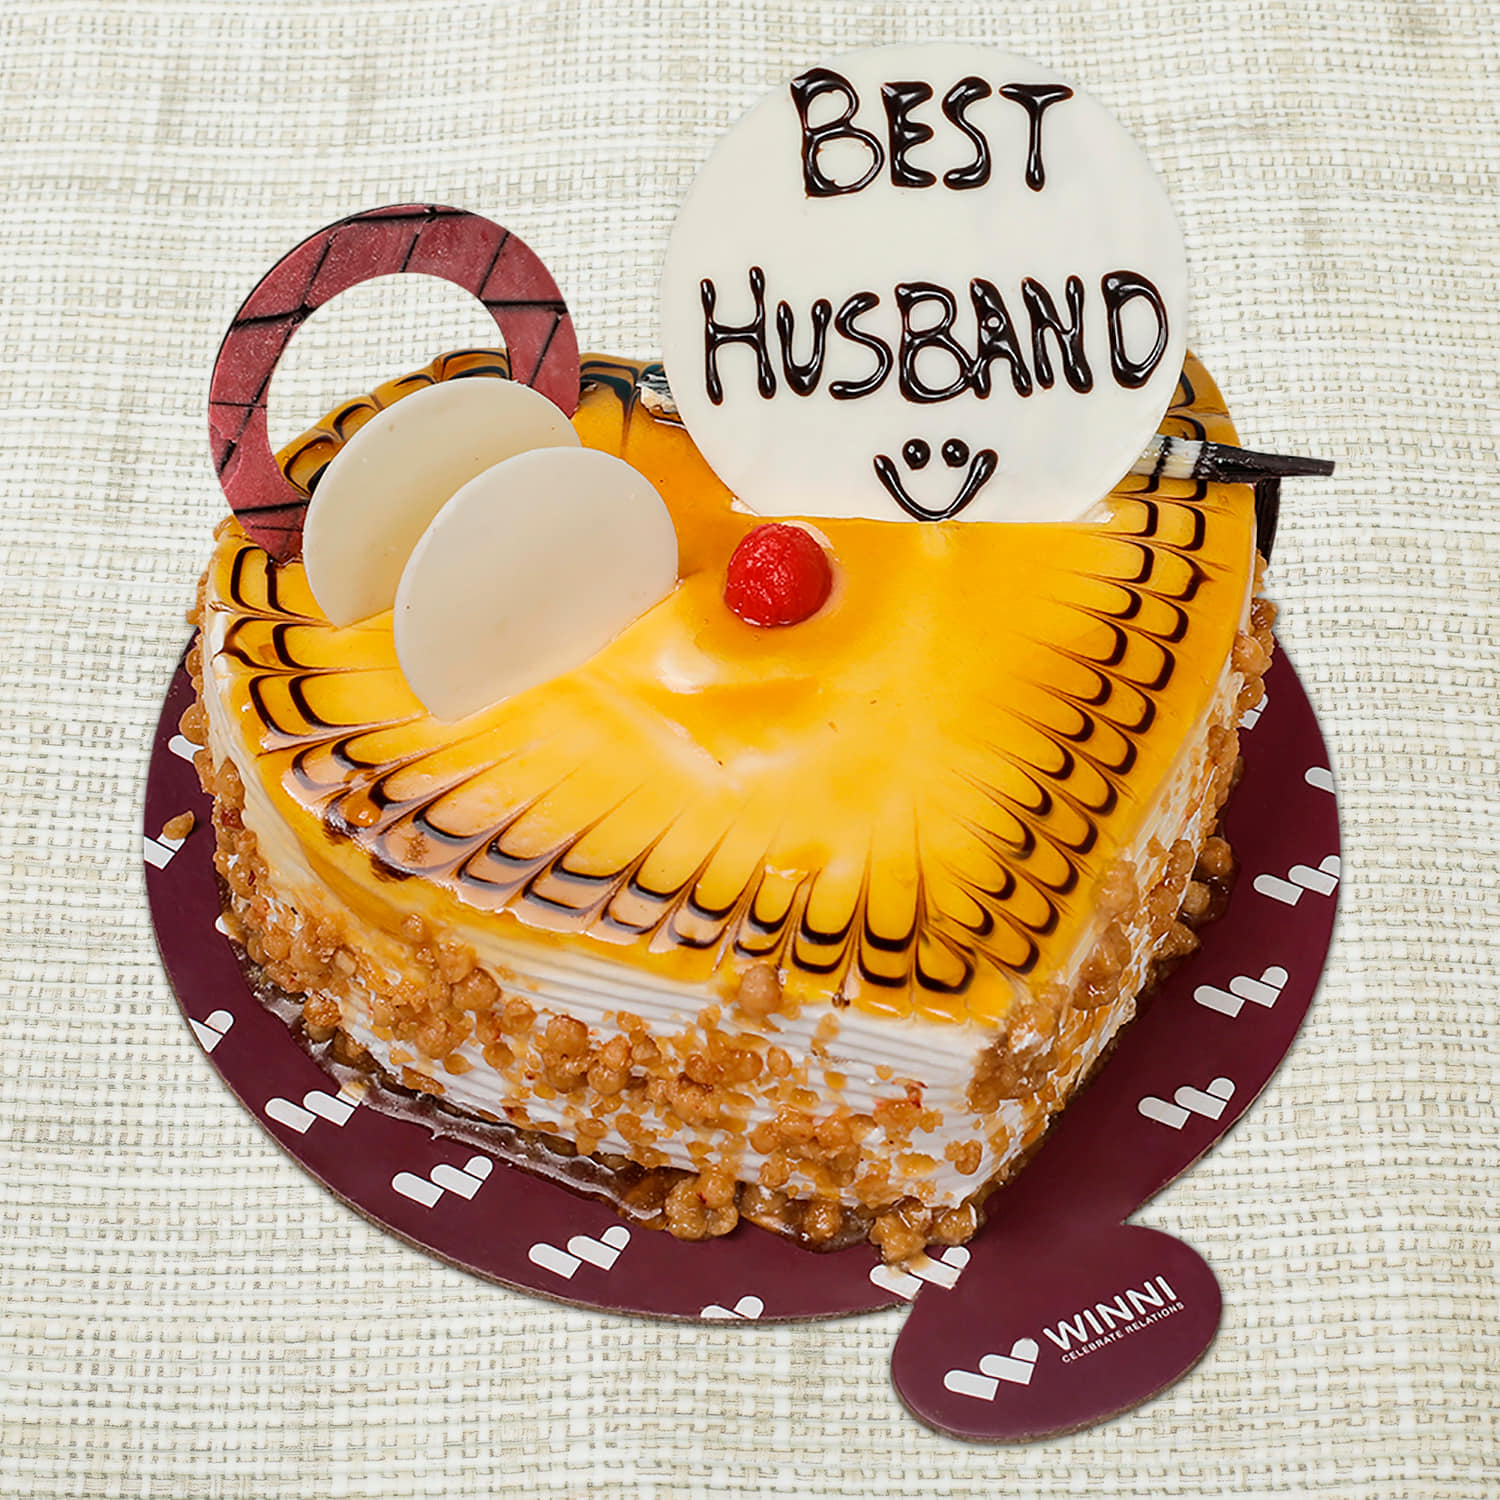 Best Husband Red Velvet Heart Shape Cake | Winni.in